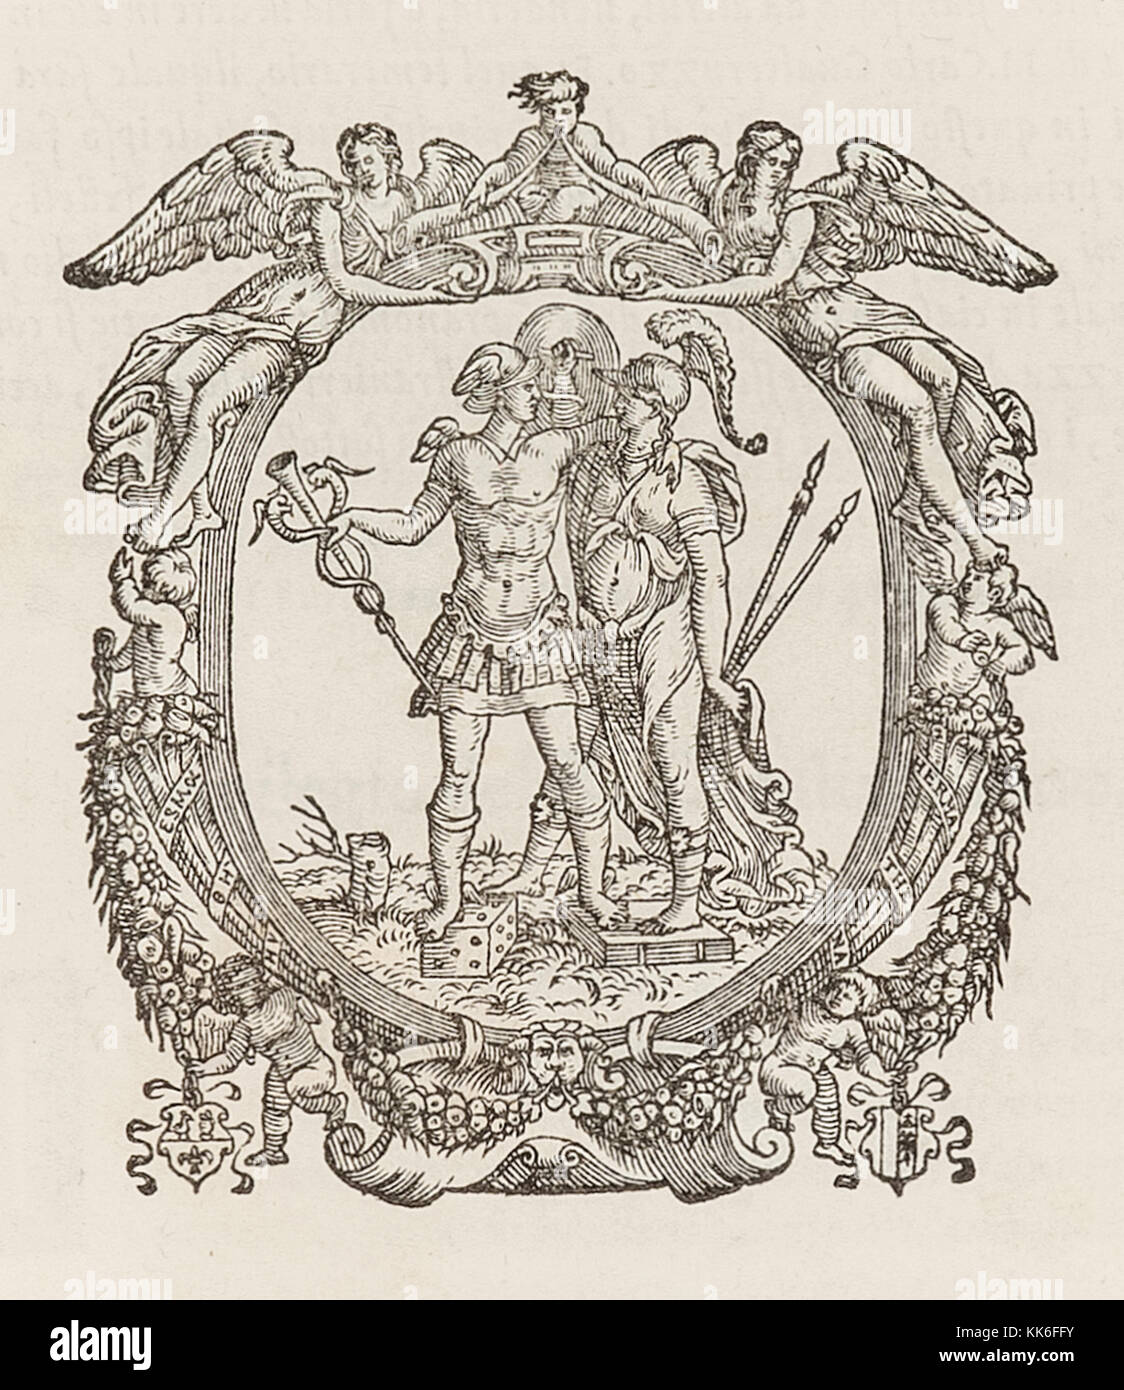 Appareil utilisé par l'imprimante imprimantes Scotto Gualtiro à Venise entre 1550 à 1555. Hermes est montré tenant le caducée et se tenait sur un mourir entouré dans un cadre orné de fruits, chérubins et des anges. Voir plus d'informations ci-dessous. Banque D'Images